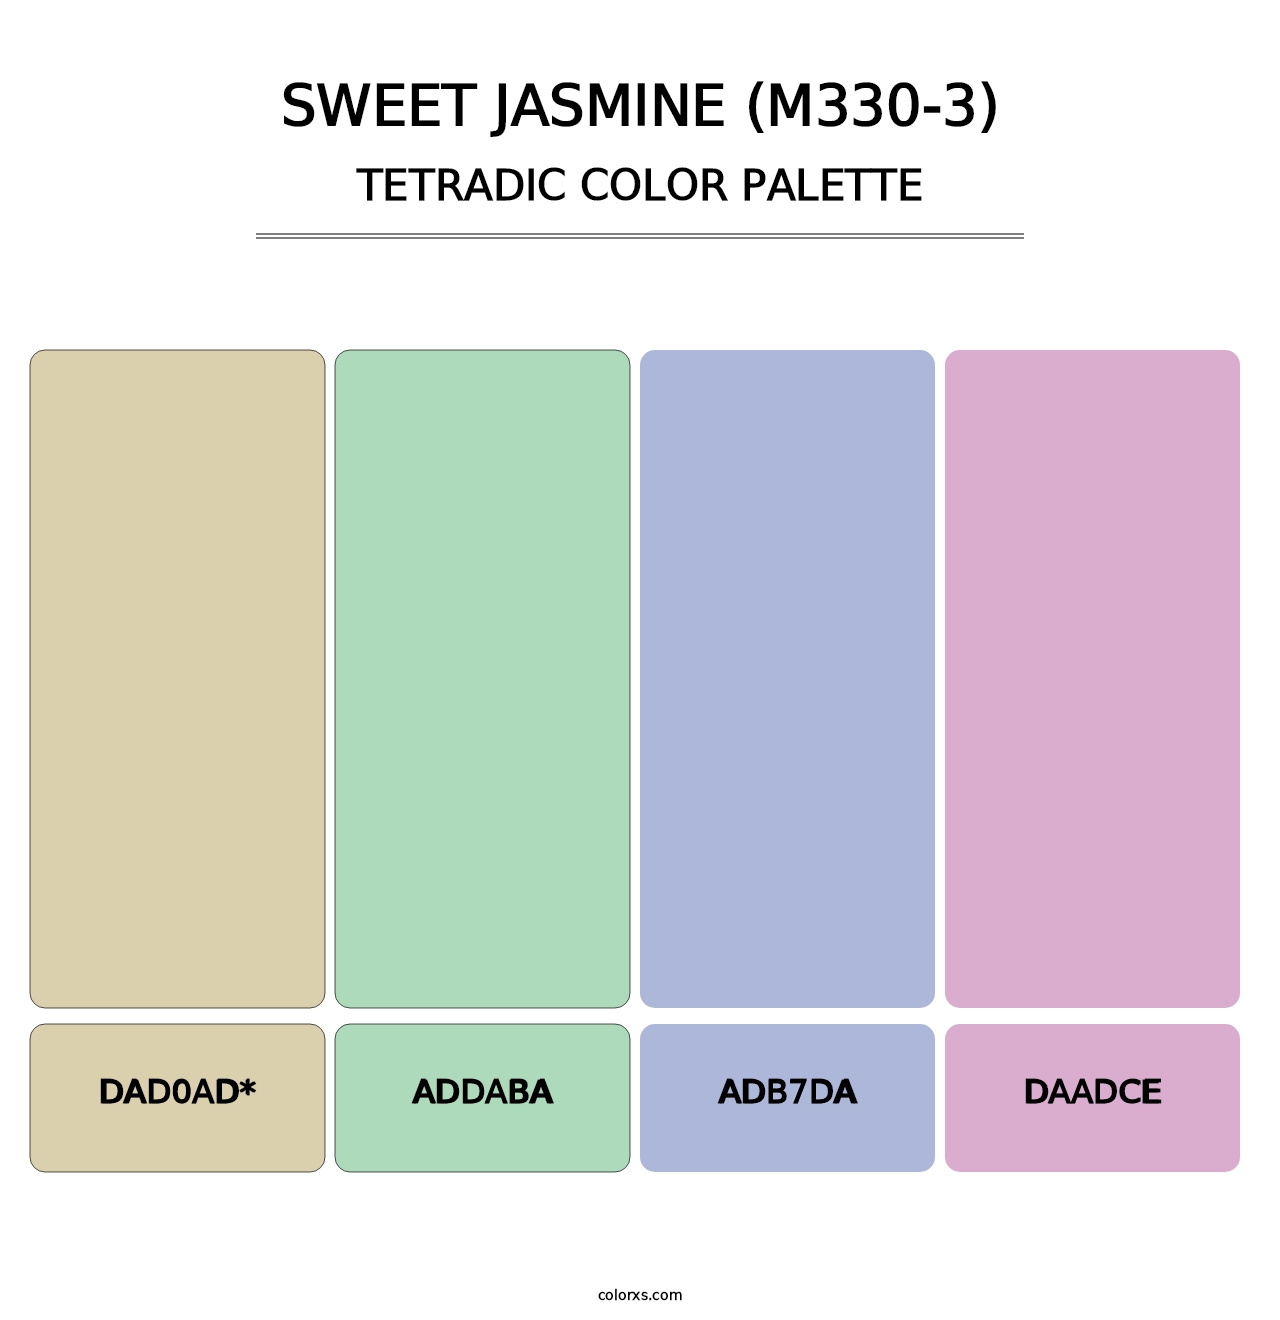 Sweet Jasmine (M330-3) - Tetradic Color Palette